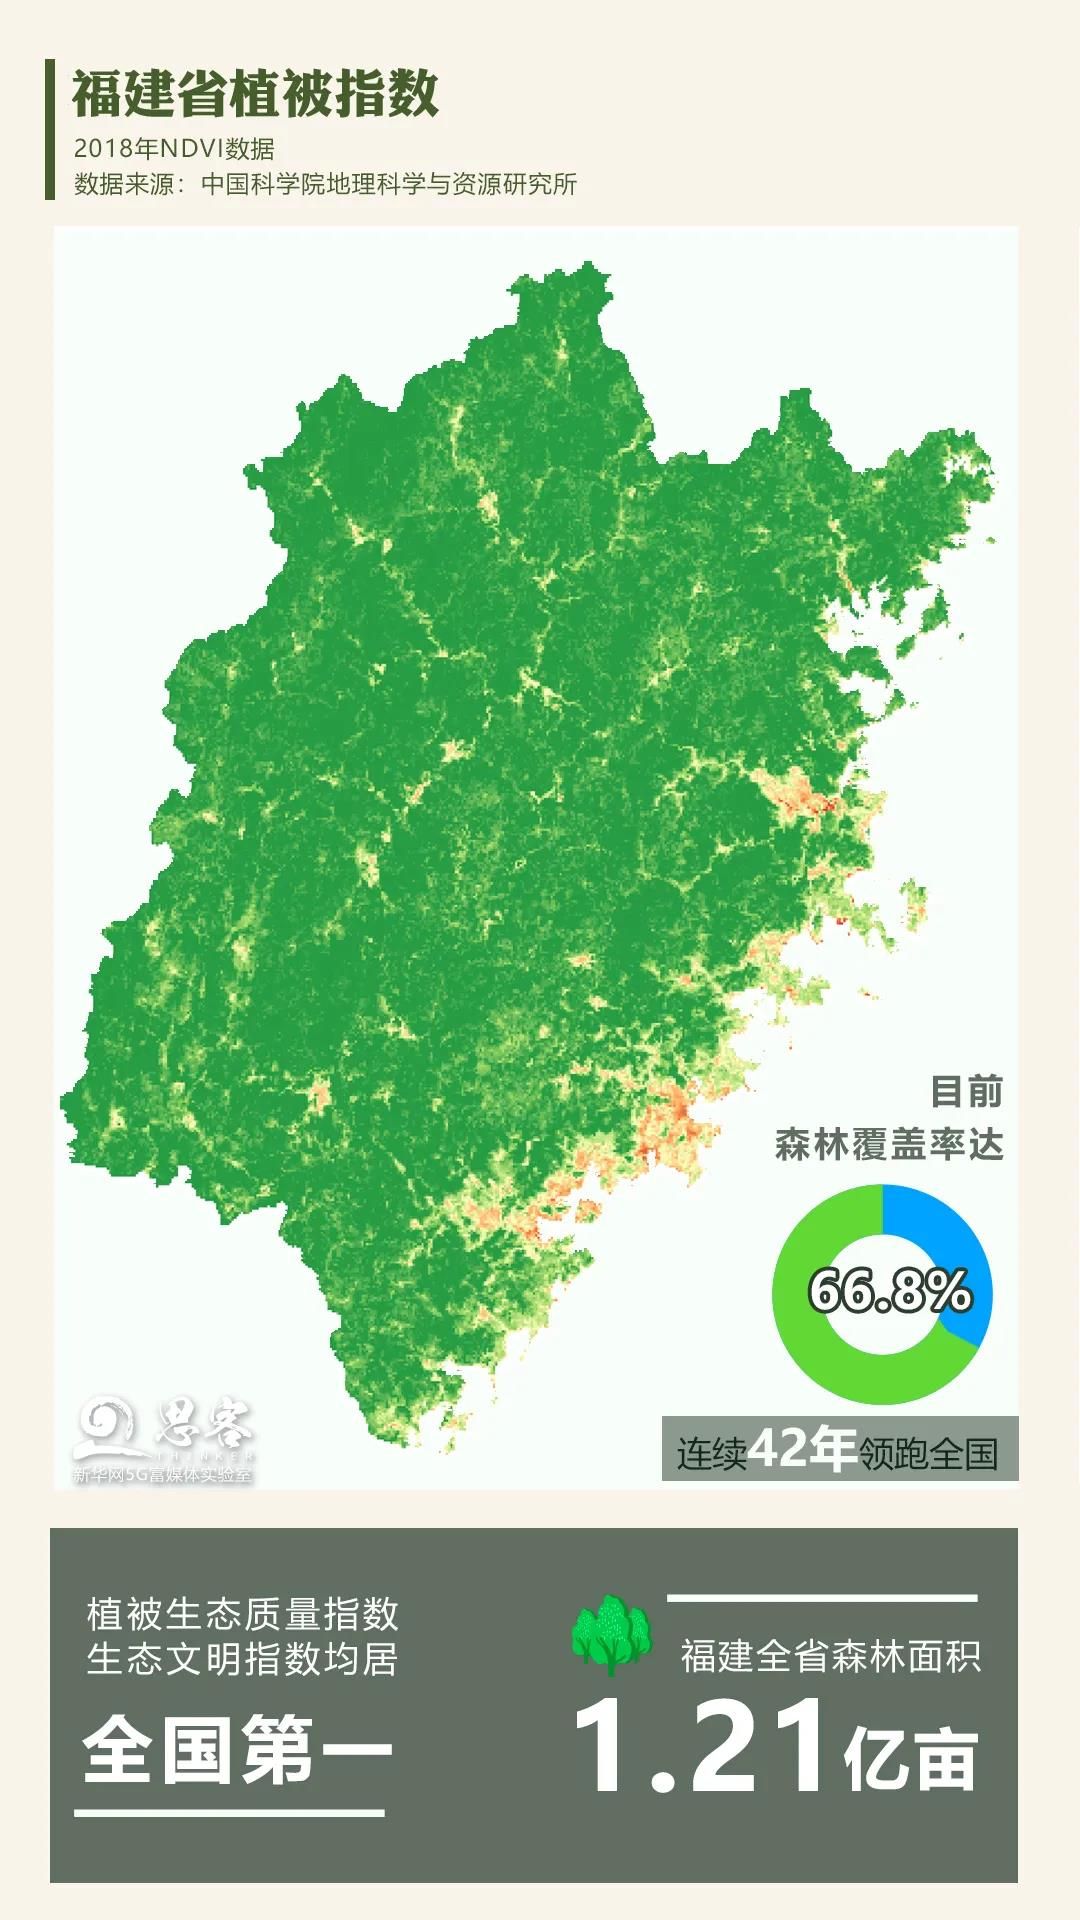 超清中国地图 卫星图片